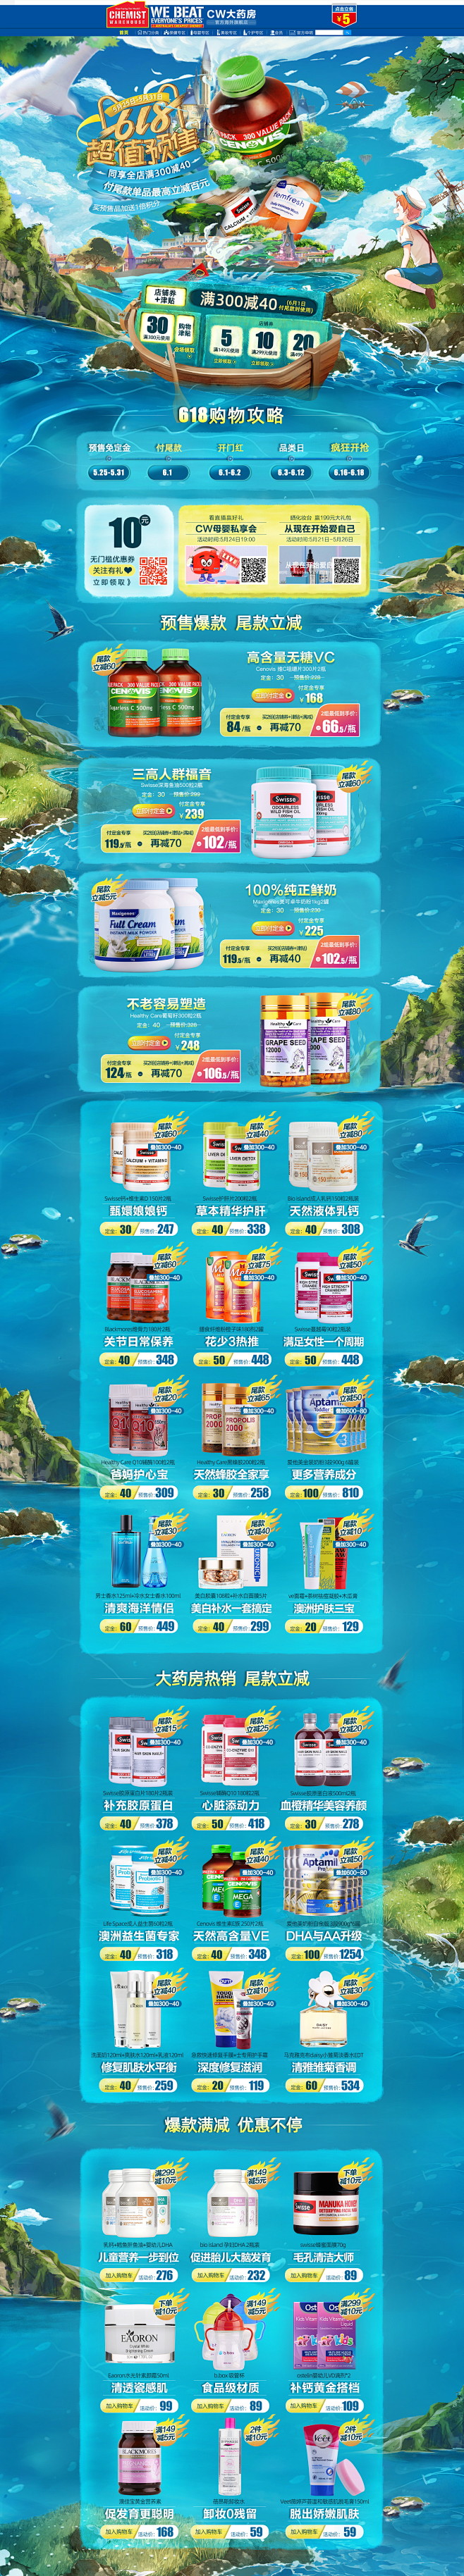 618预售 营养保健食品滋补膳食天猫店铺...